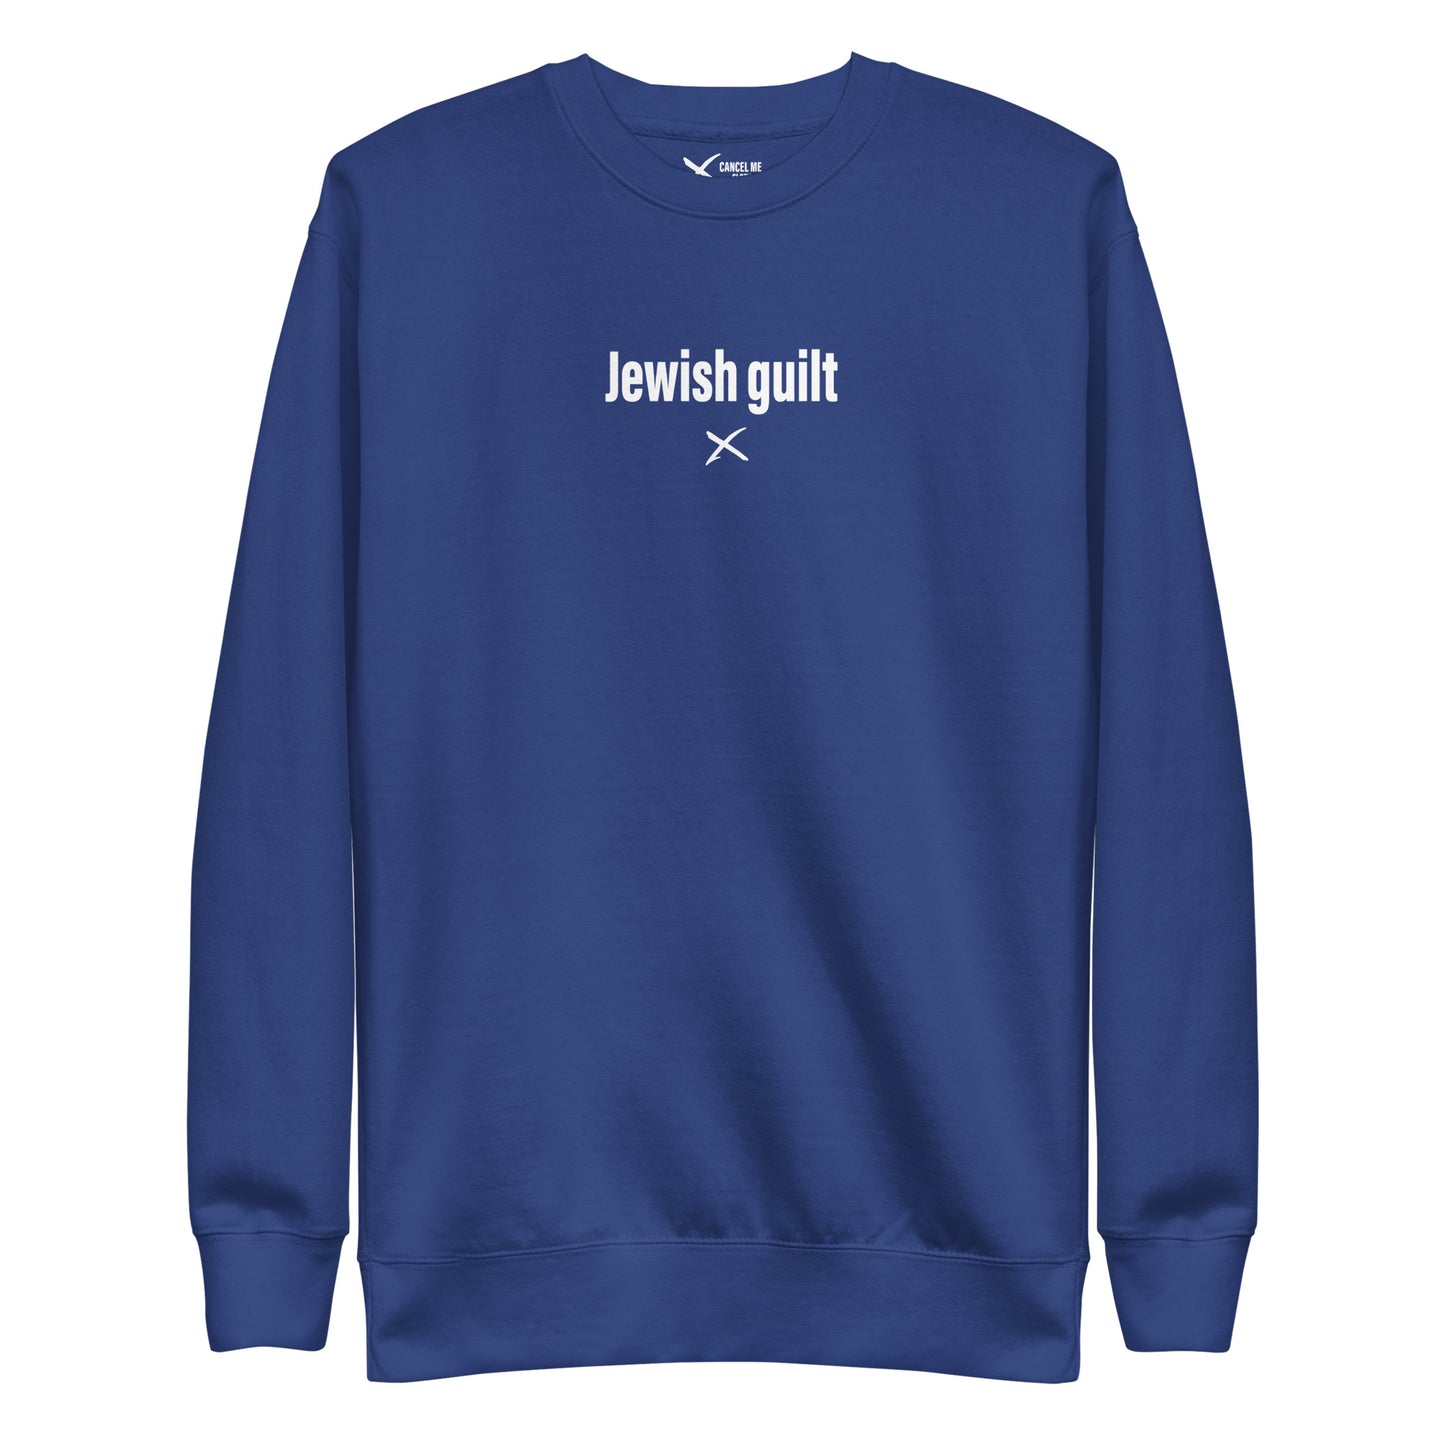 Jewish guilt - Sweatshirt